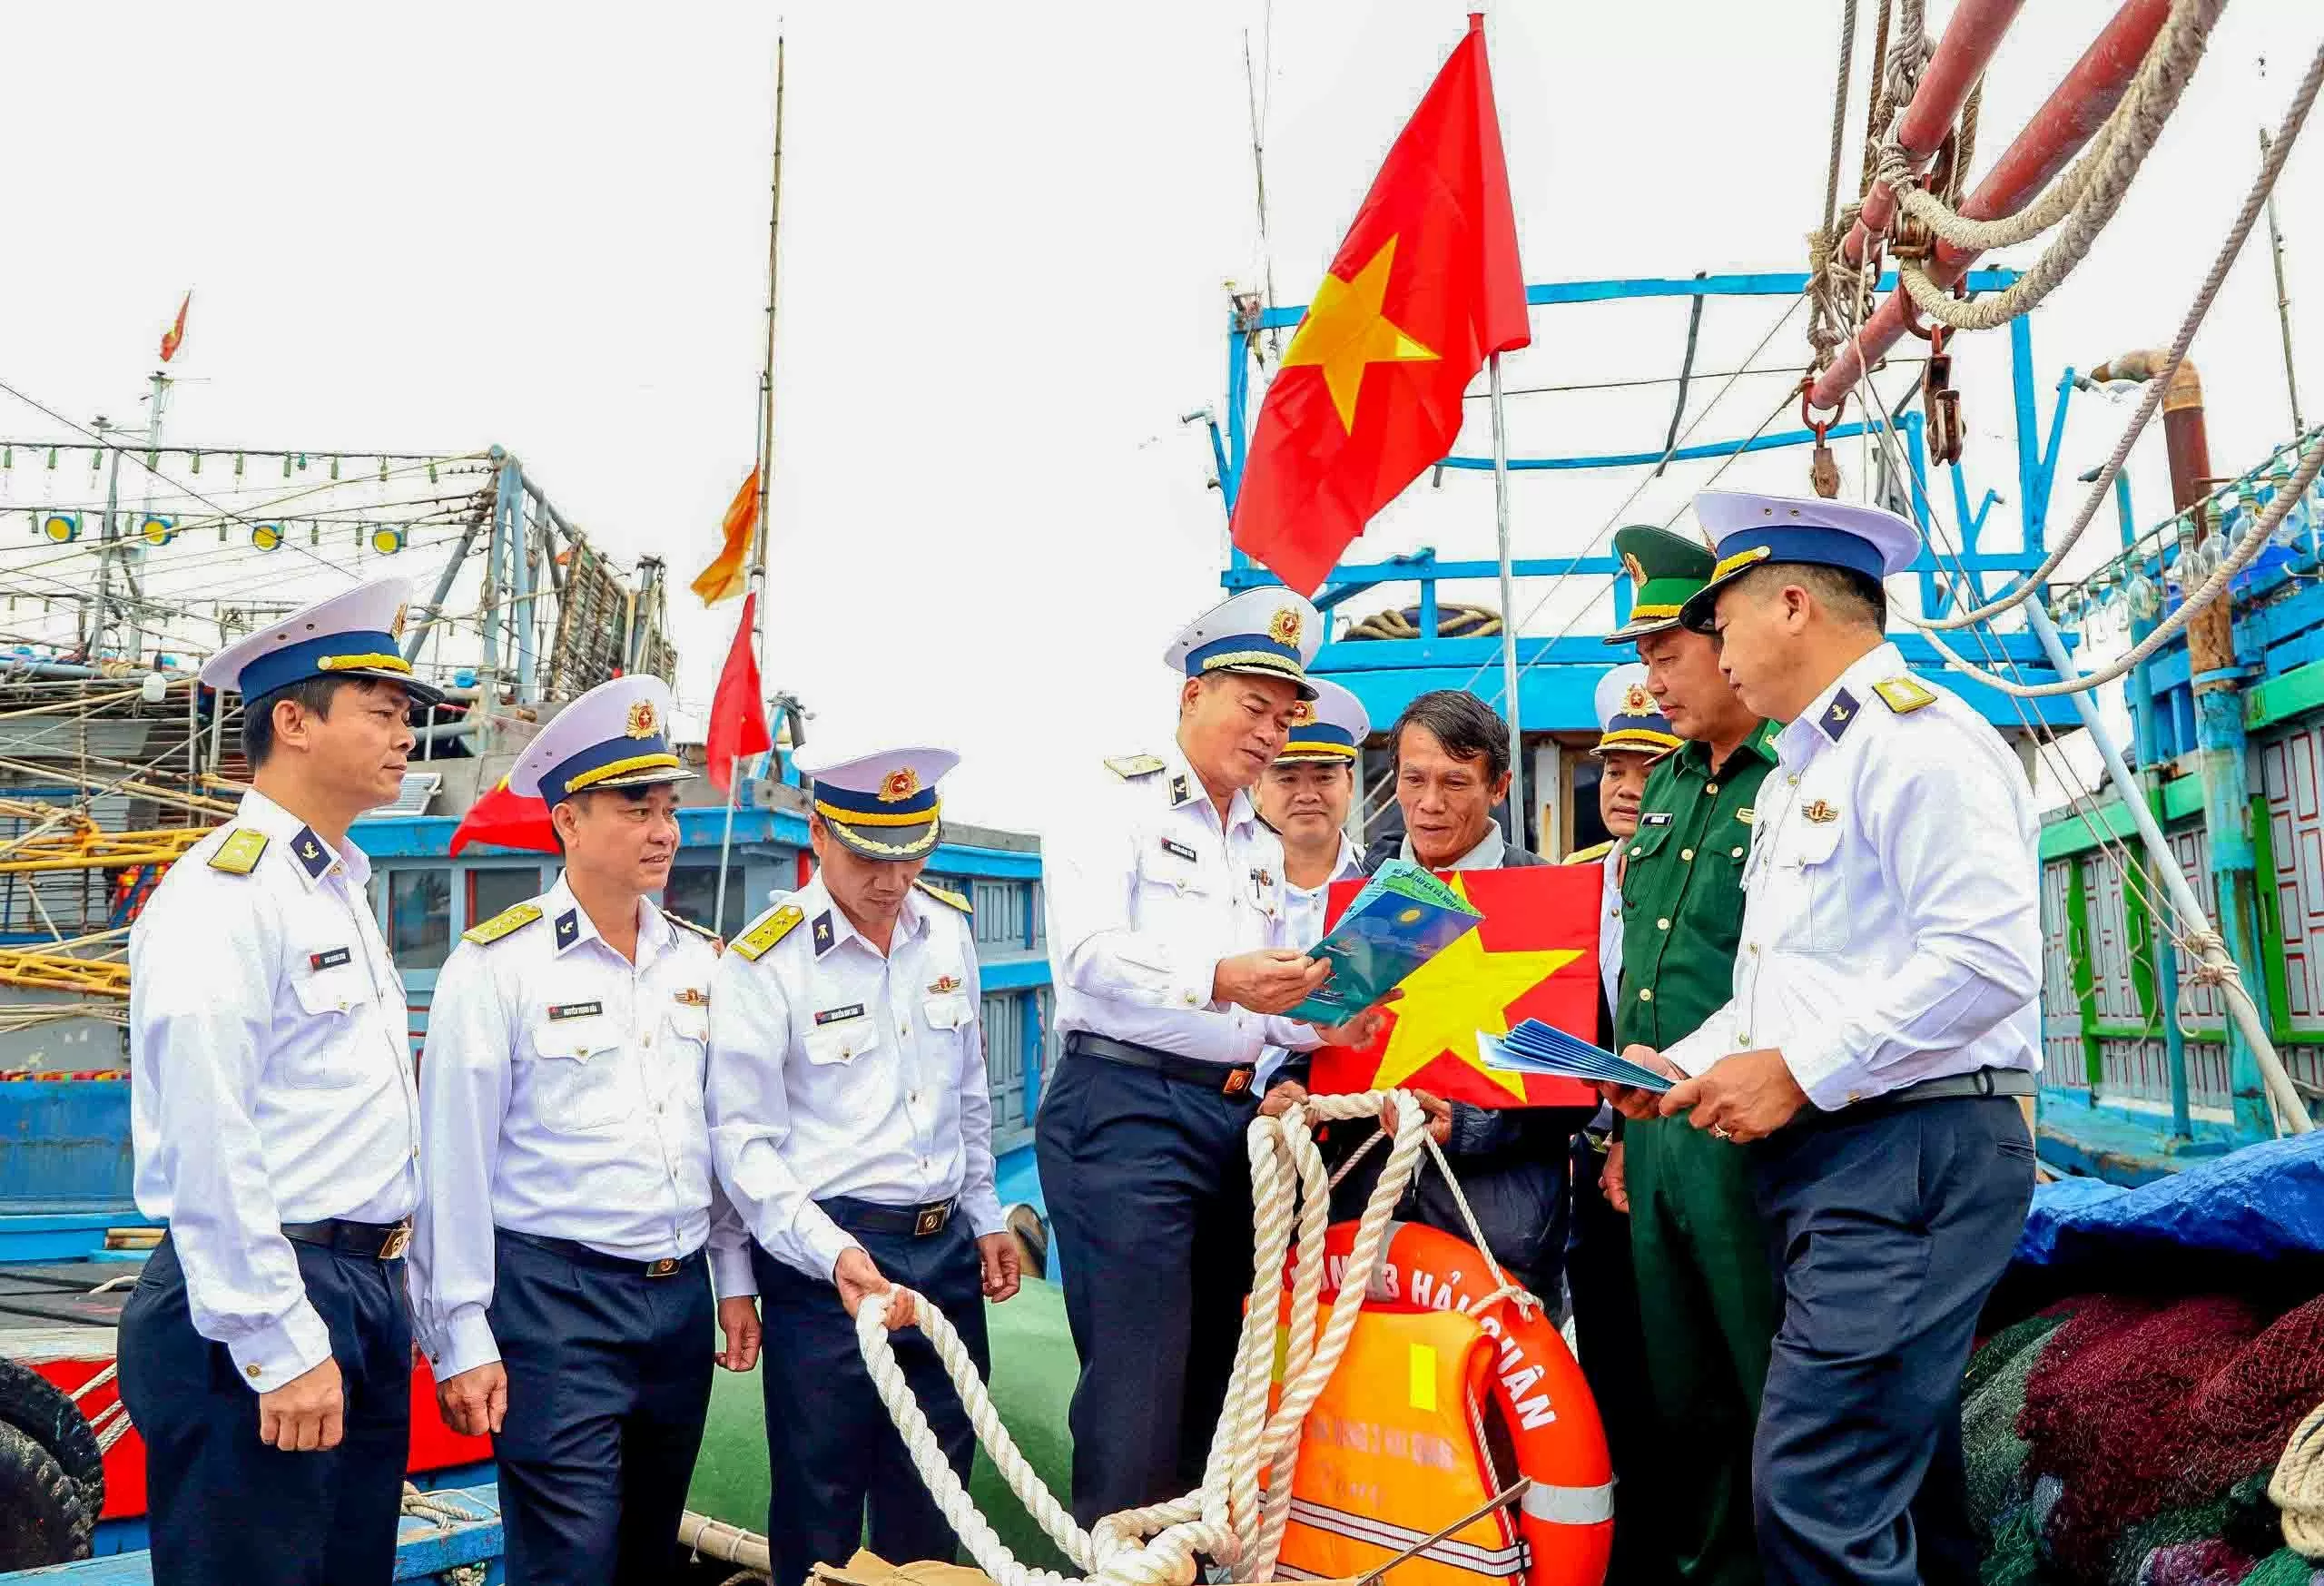 Đoàn công tác Bộ Tư lệnh Vùng 3 Hải quân tuyên truyền pháp luật cho ngư dân tại Quảng Nam.

